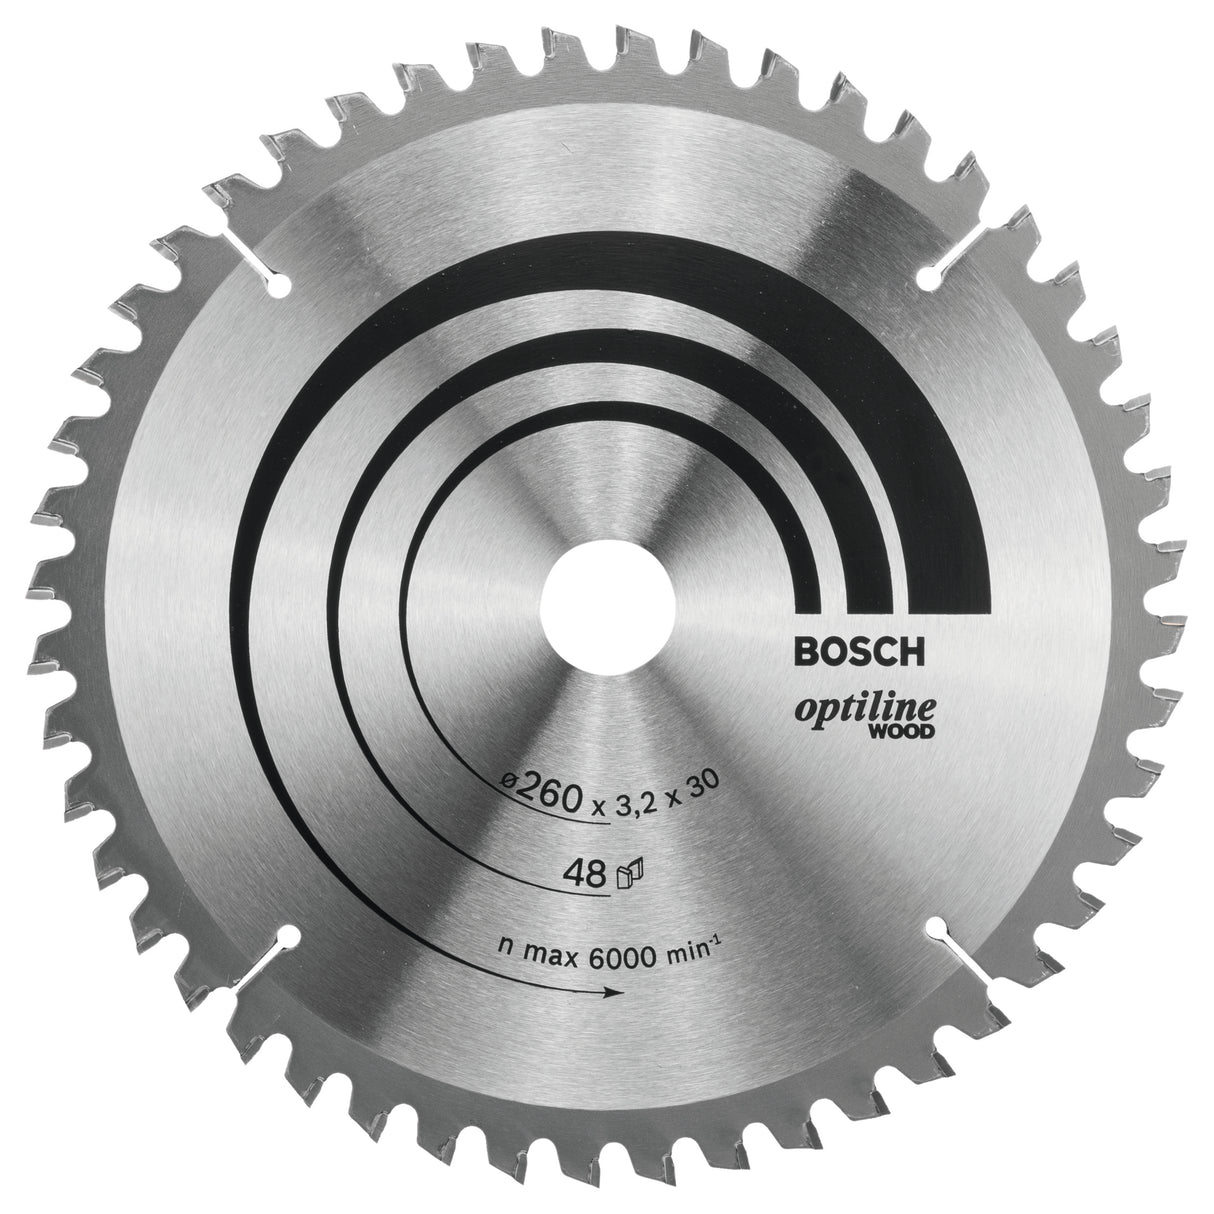 Bosch Professional Optiline Wood Circular Saw Blade - 260mm x 30mm x 3.2mm, 48 Teeth